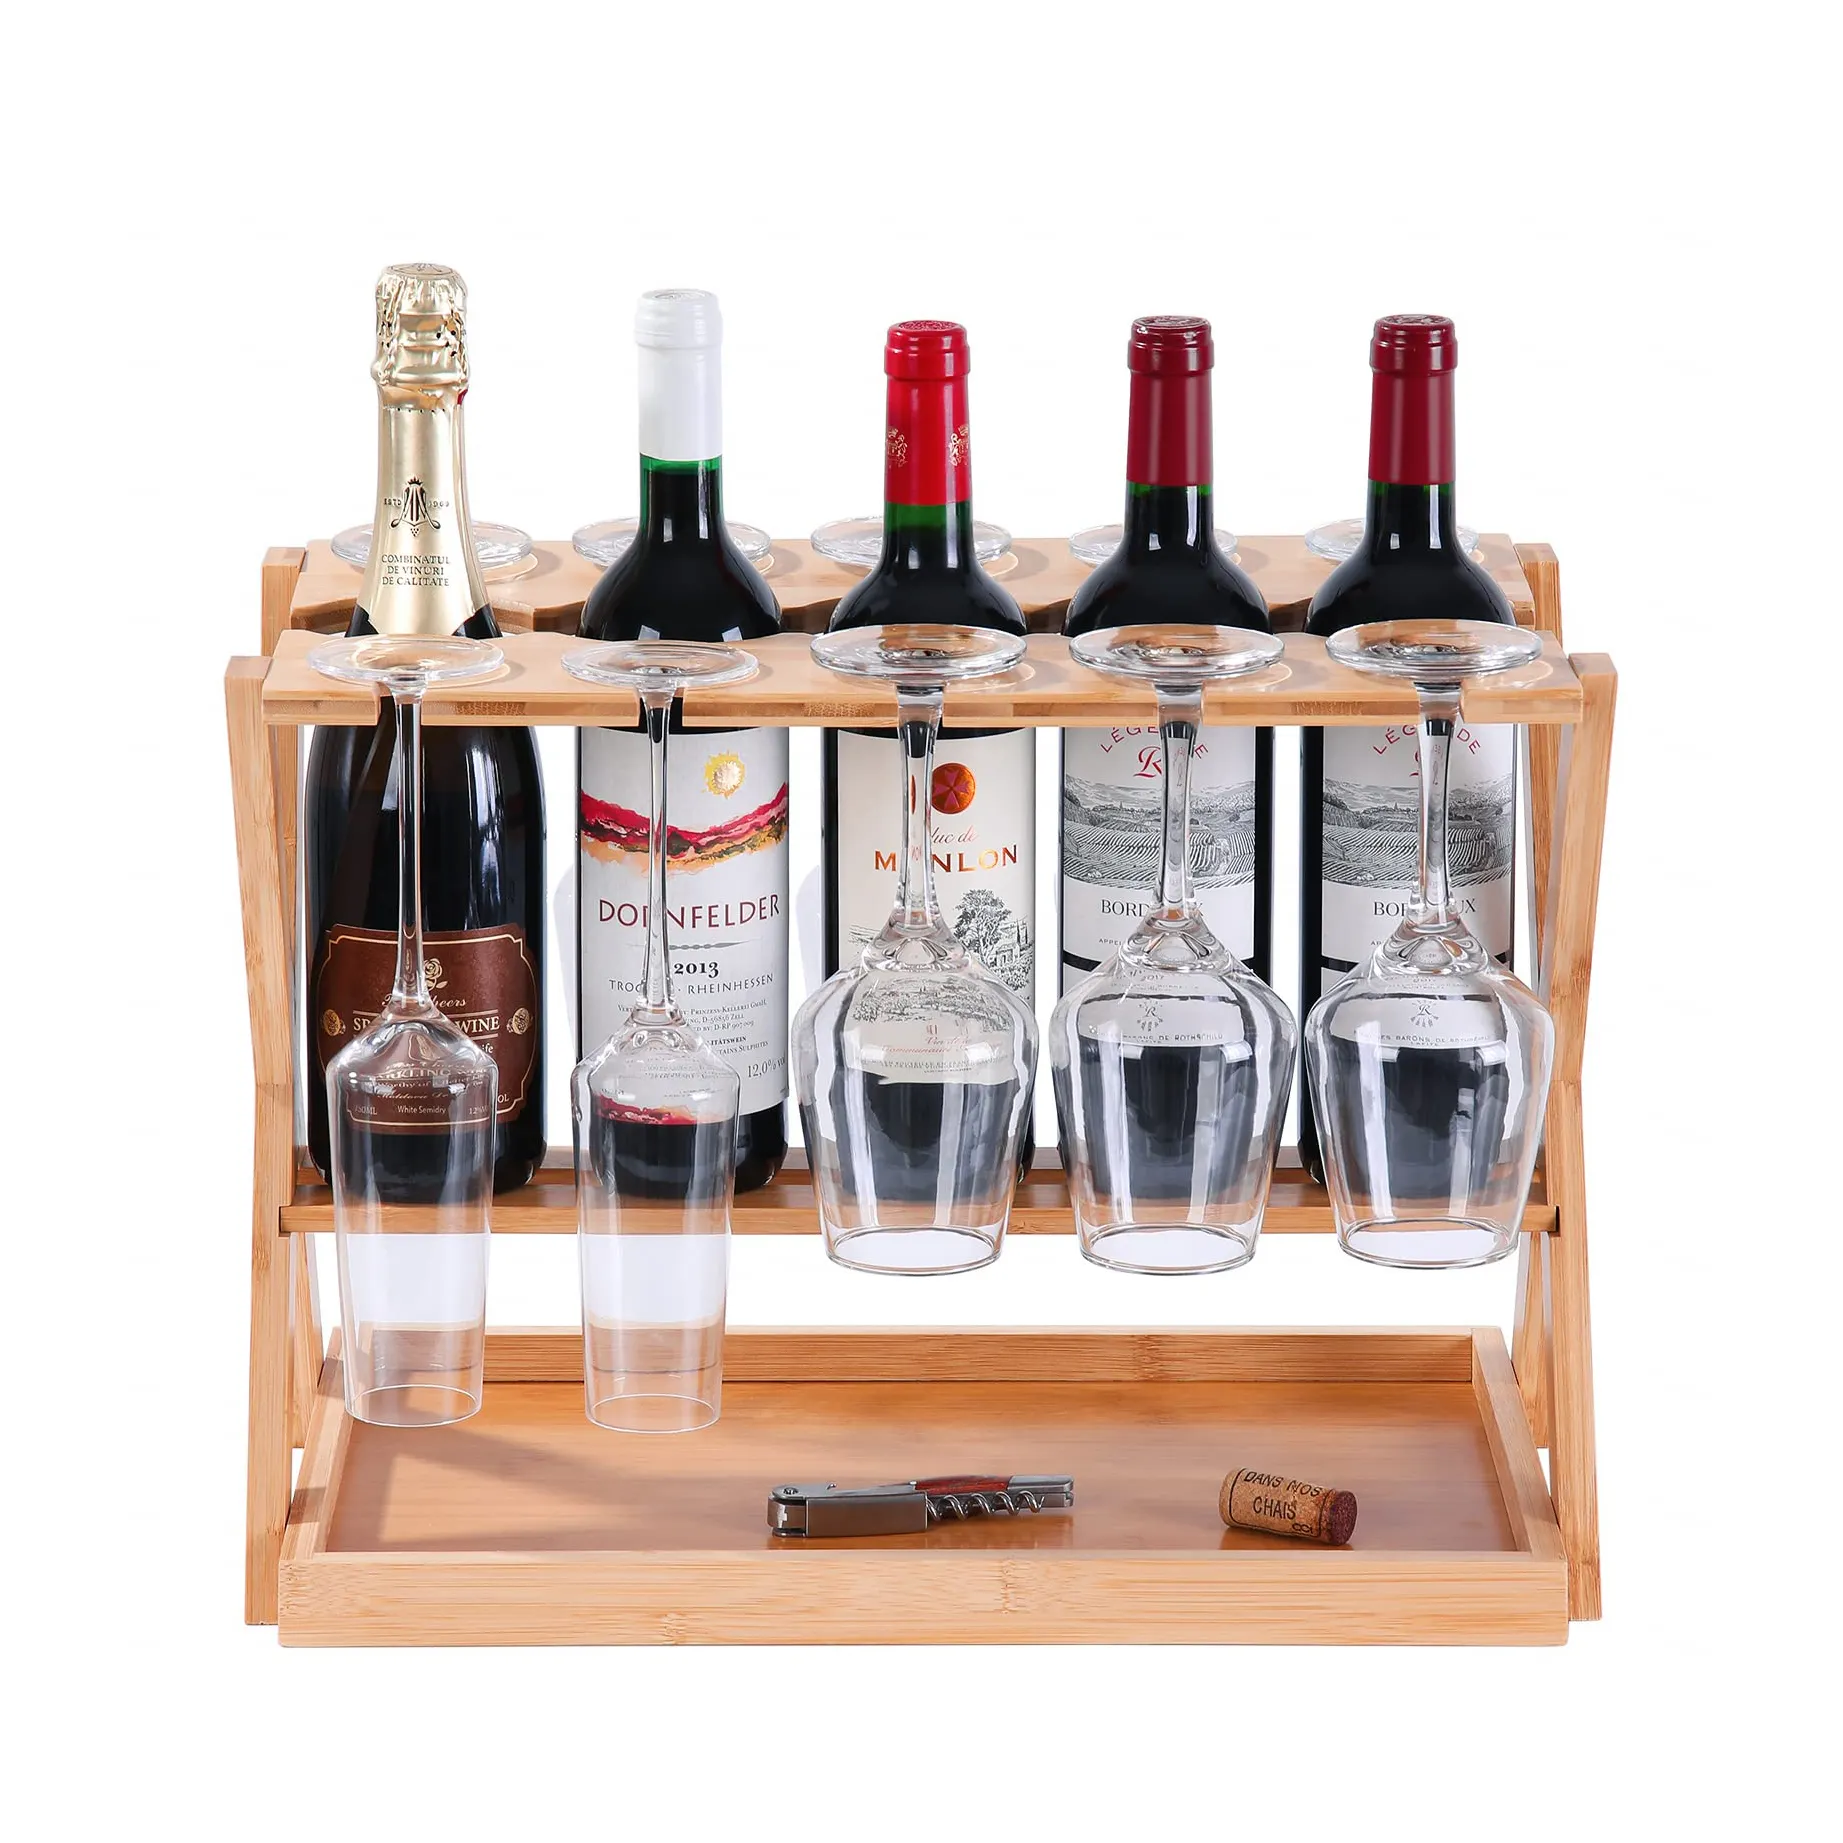 ガラスホルダー付きカウンタートップワインラック、コルクトレイ付き自立型卓上小型ワインラック、5本のワインボトルを収納10本のグラス